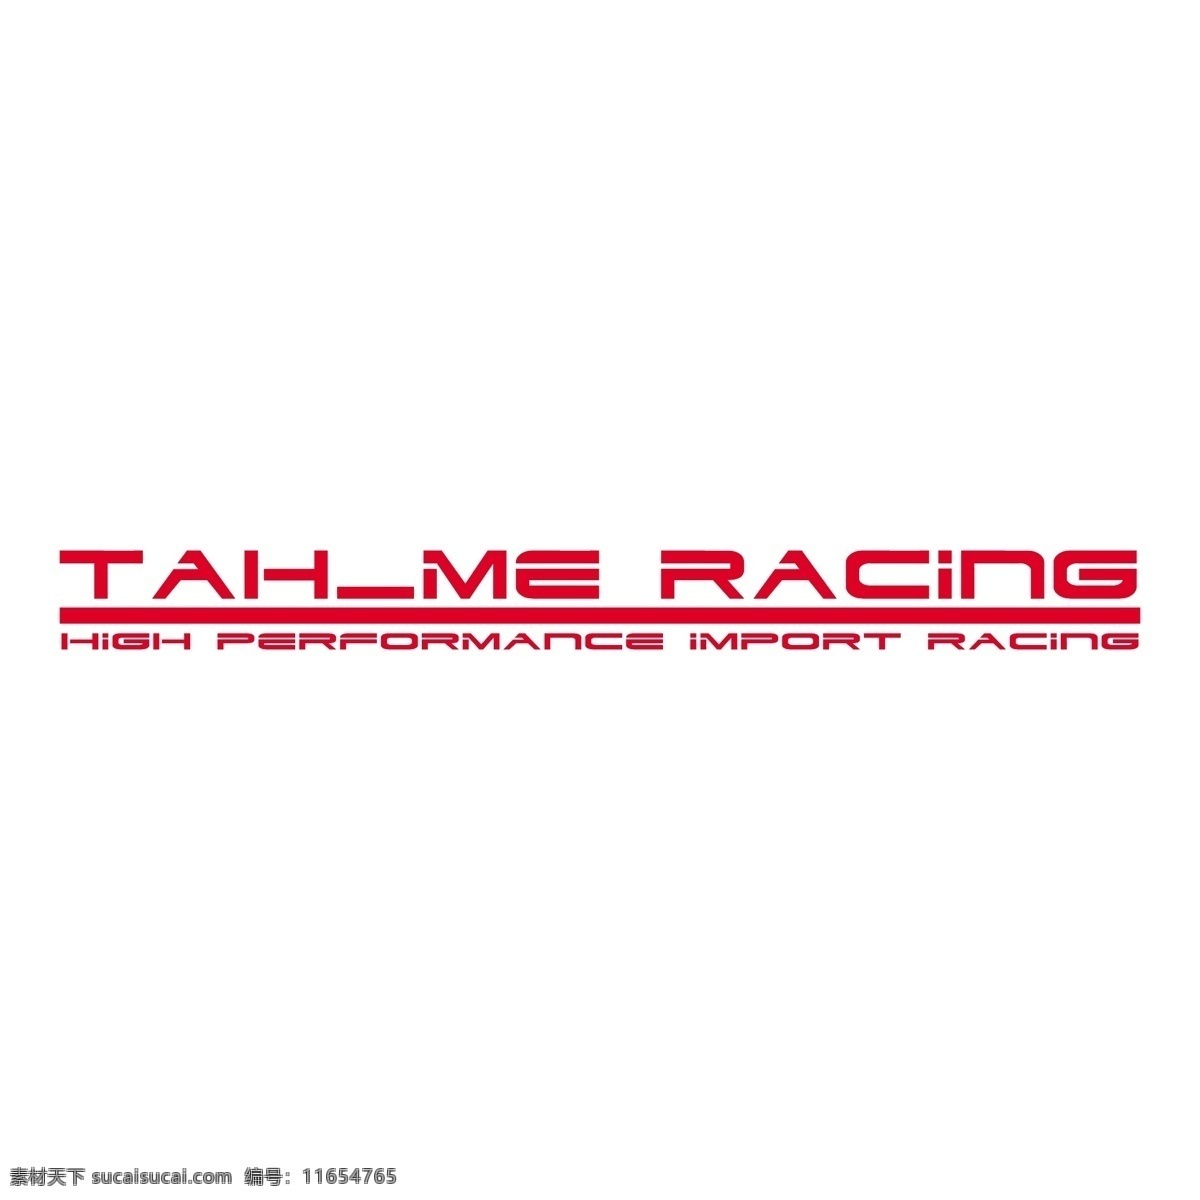 tahme 赛车 自由 标识 psd源文件 logo设计